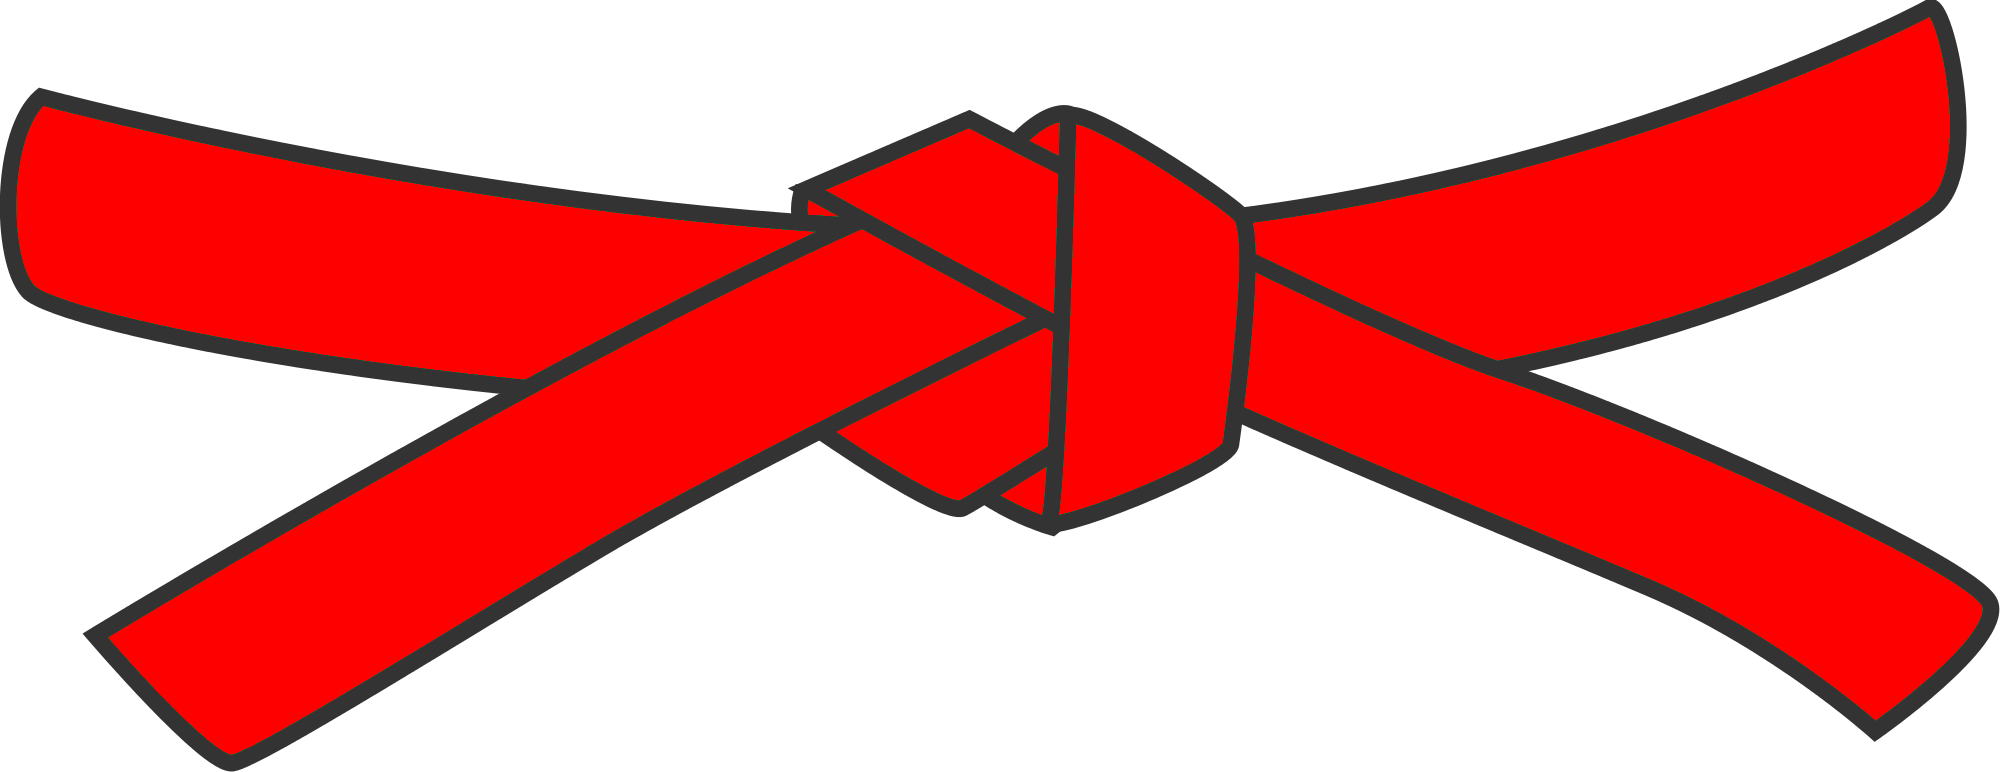 10th Kyu - Red belt